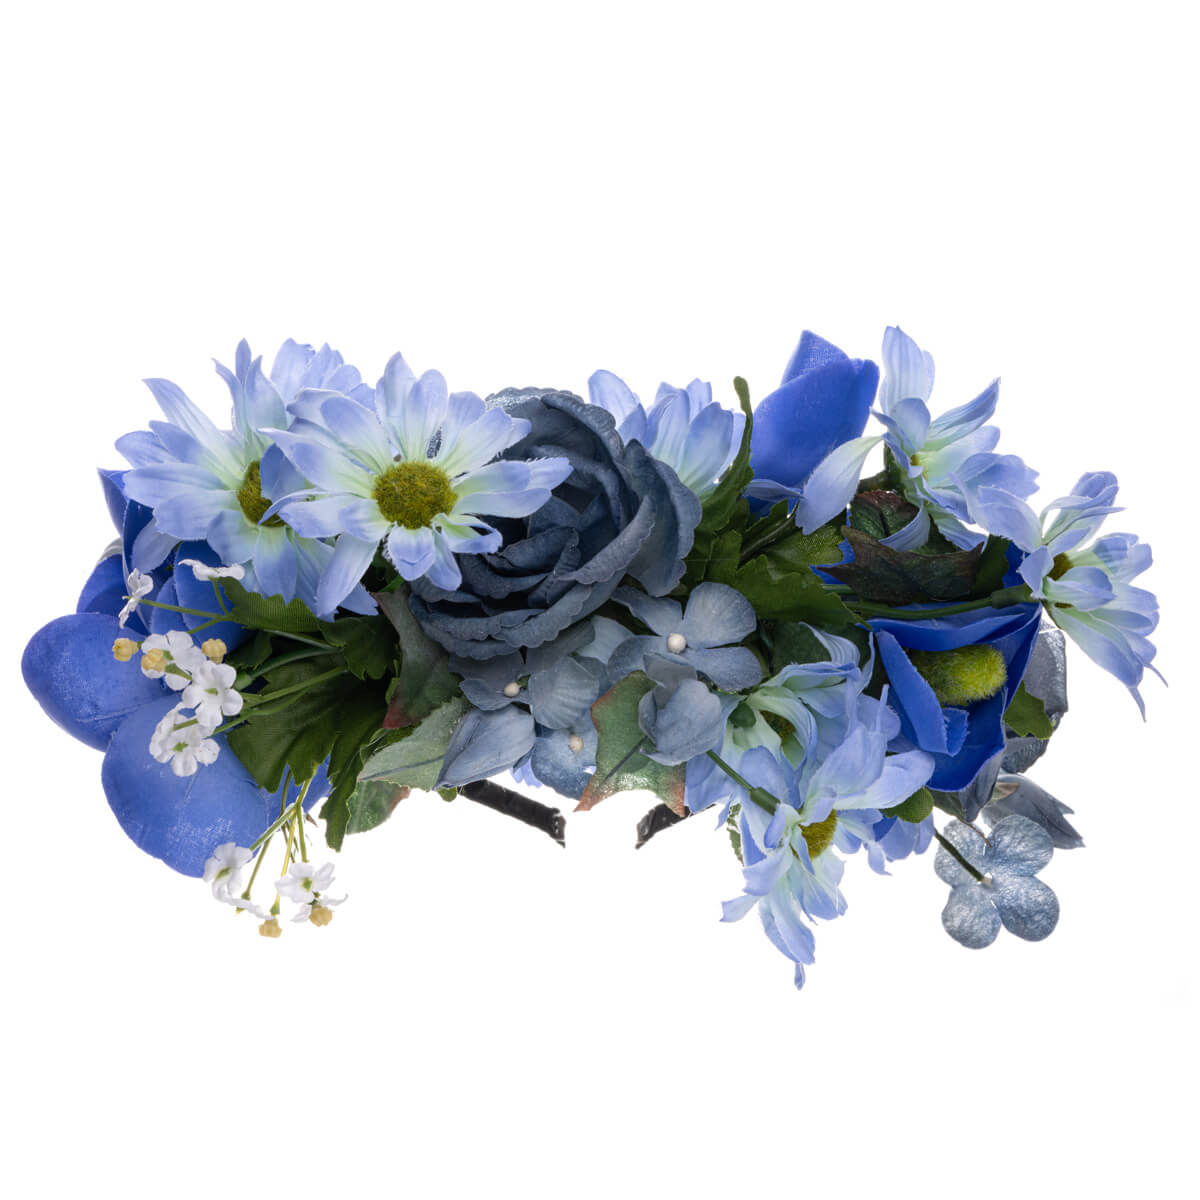 Sininen kukkaseppele hiuspanta 104080084117 | Ninja.fi